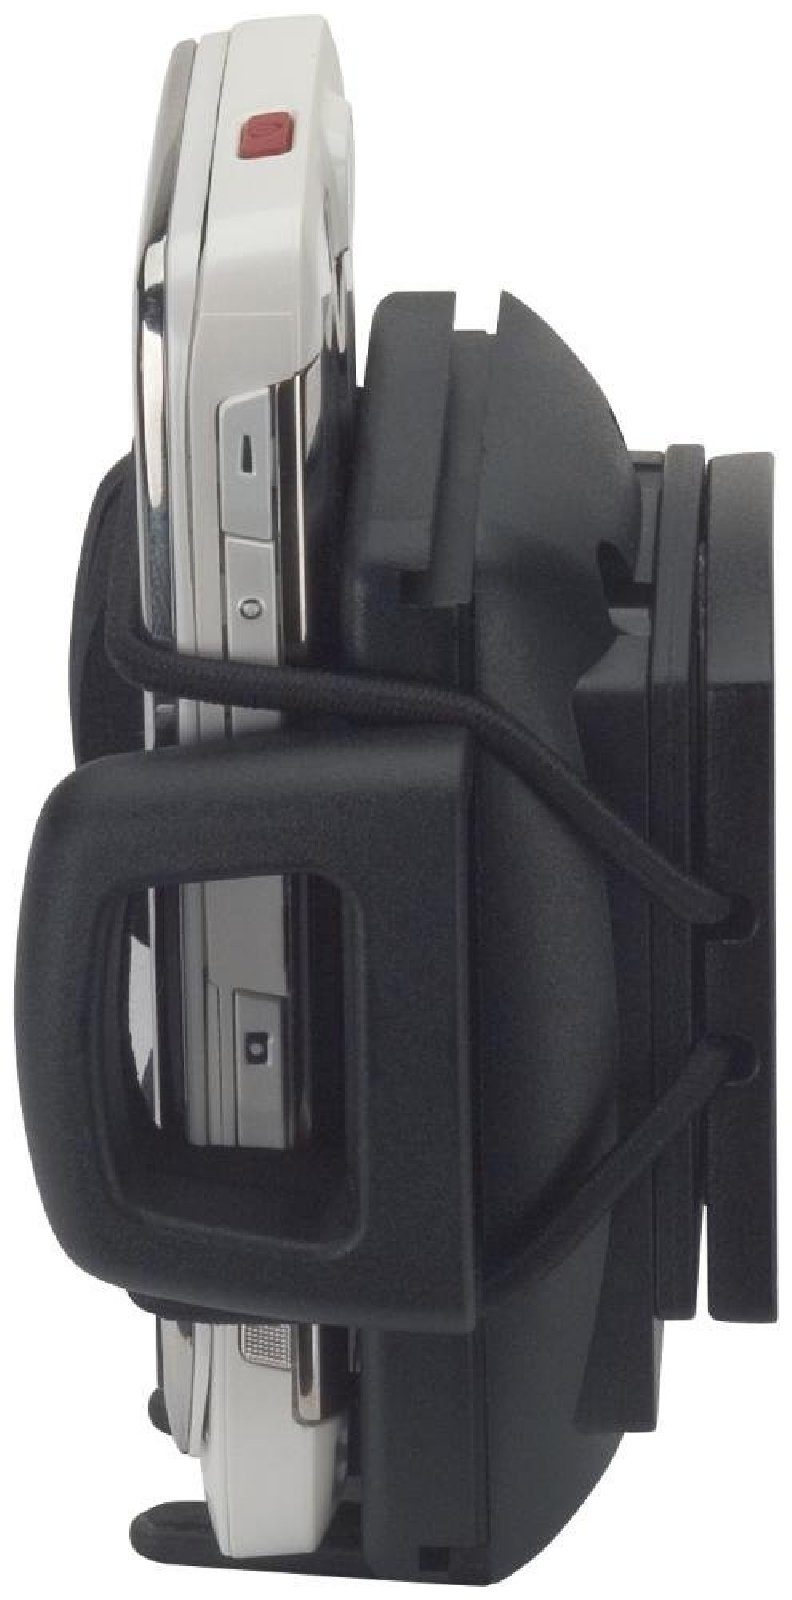 Sicherungsgummi 4 Gummizug Halter Adapterplatte Smartphone für Handy-Halterung Sicherung HR Krallen GRIP HR universal